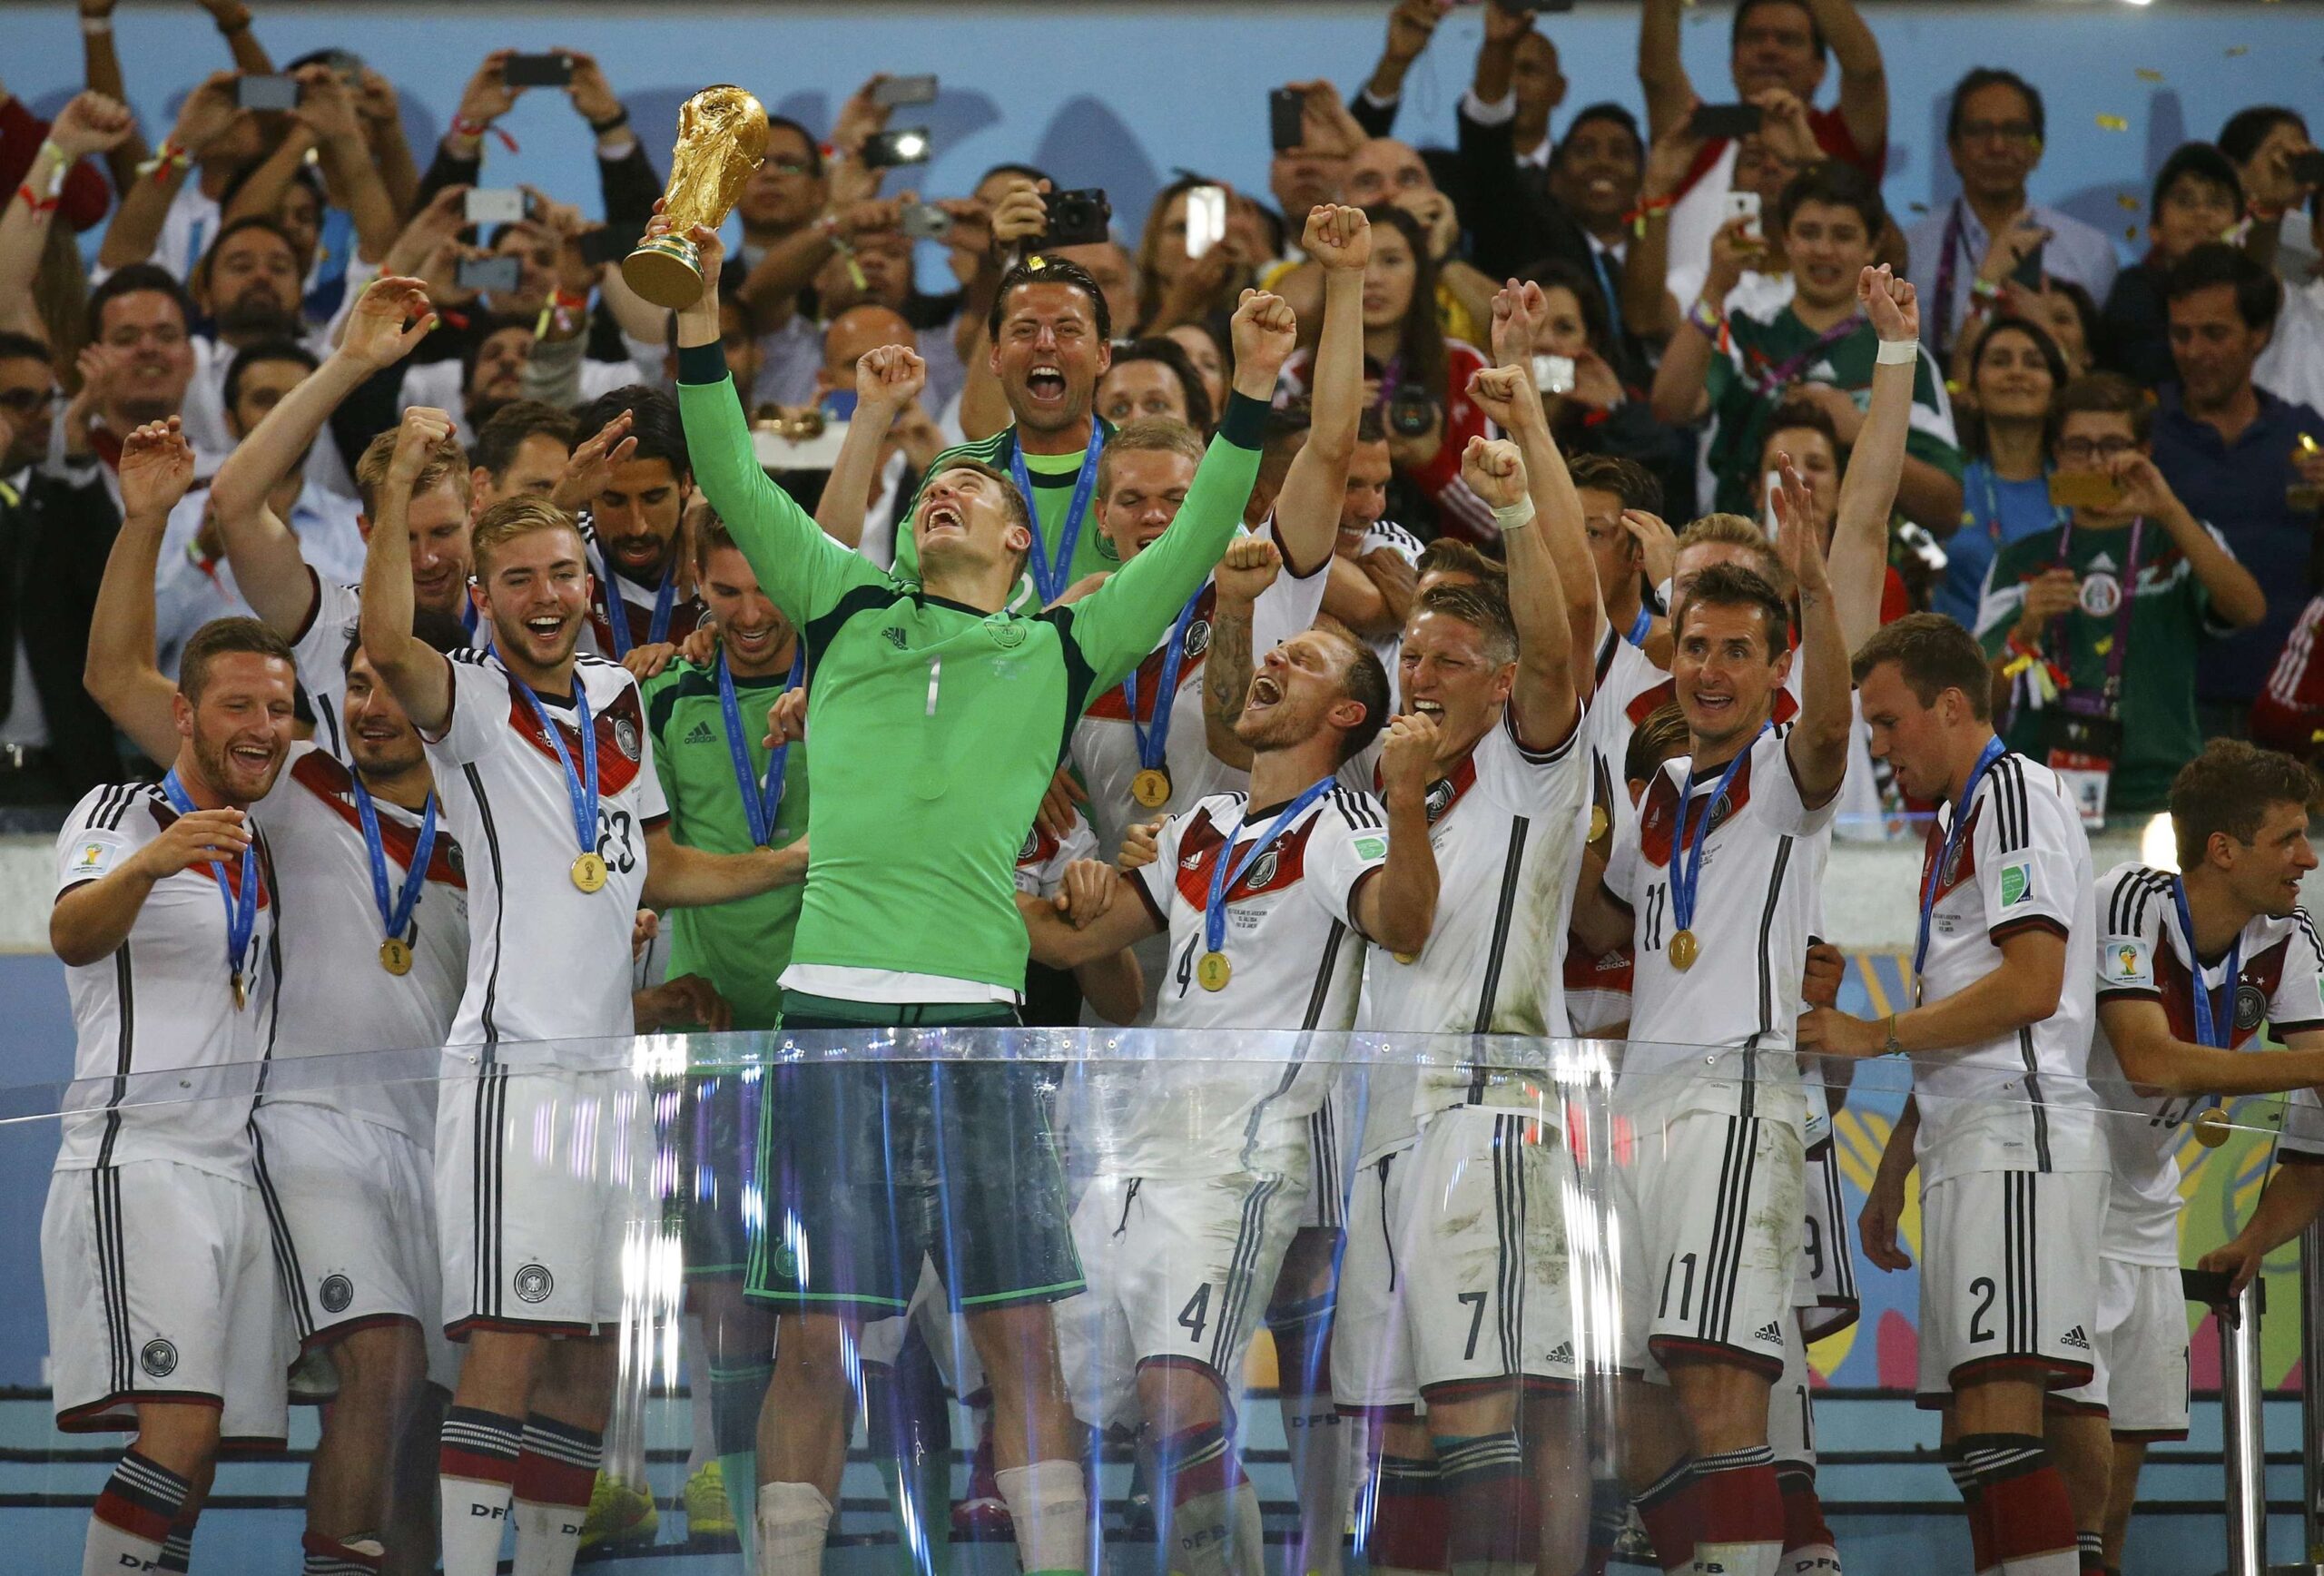 Neuer nâng cao chiếc cúp danh giá nhất hành tinh cùng chức vô địch FIFA World Cup 2014 (ảnh: Internet)